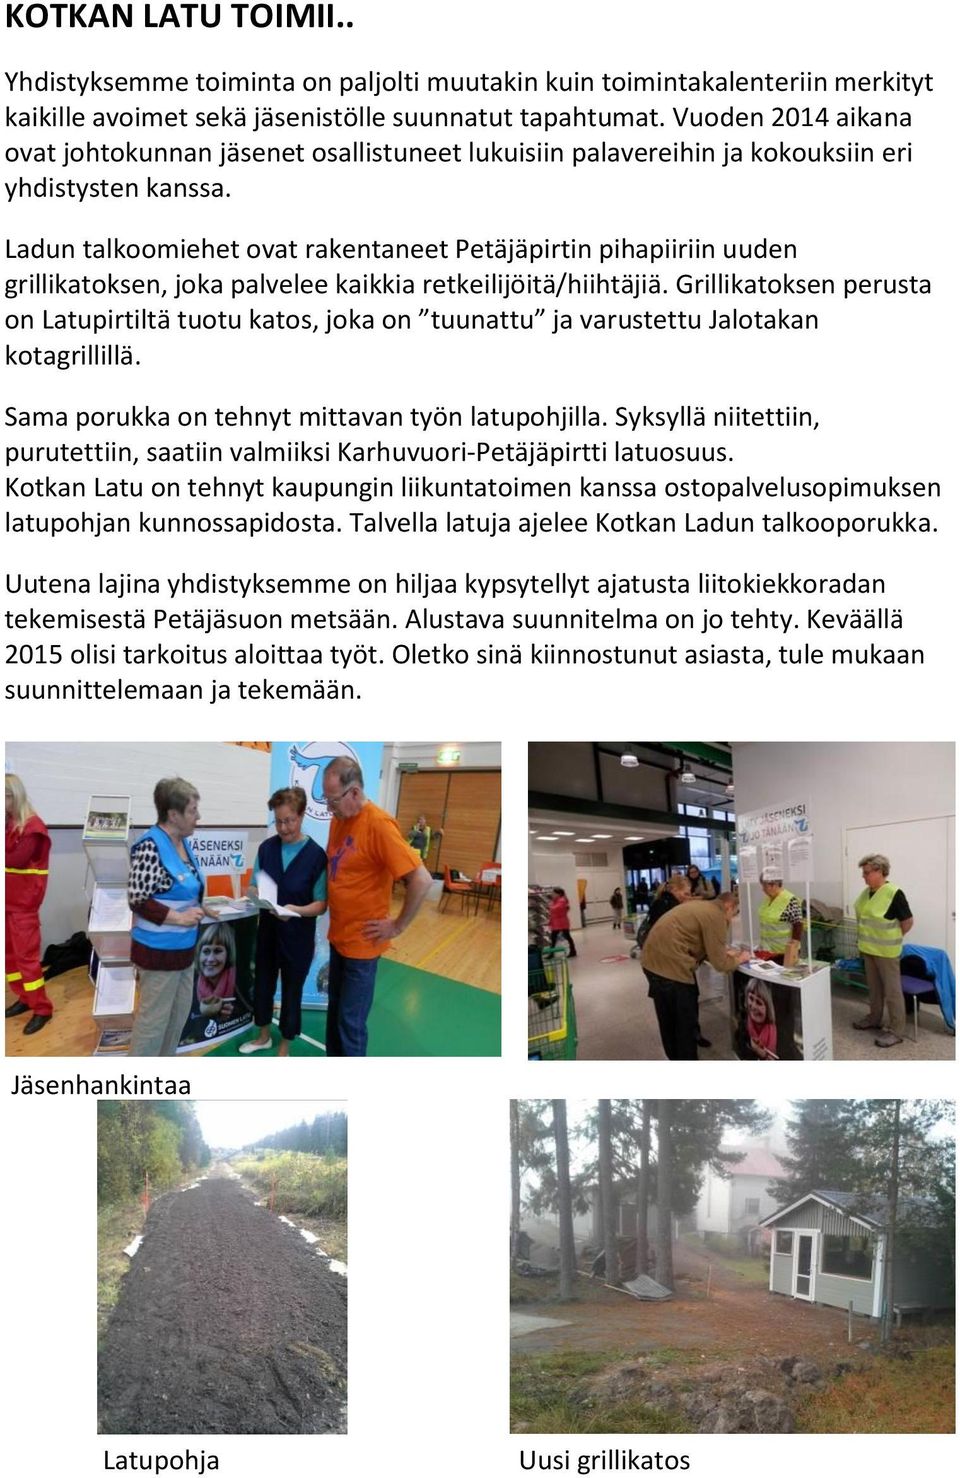 Ladun talkoomiehet ovat rakentaneet Petäjäpirtin pihapiiriin uuden grillikatoksen, joka palvelee kaikkia retkeilijöitä/hiihtäjiä.